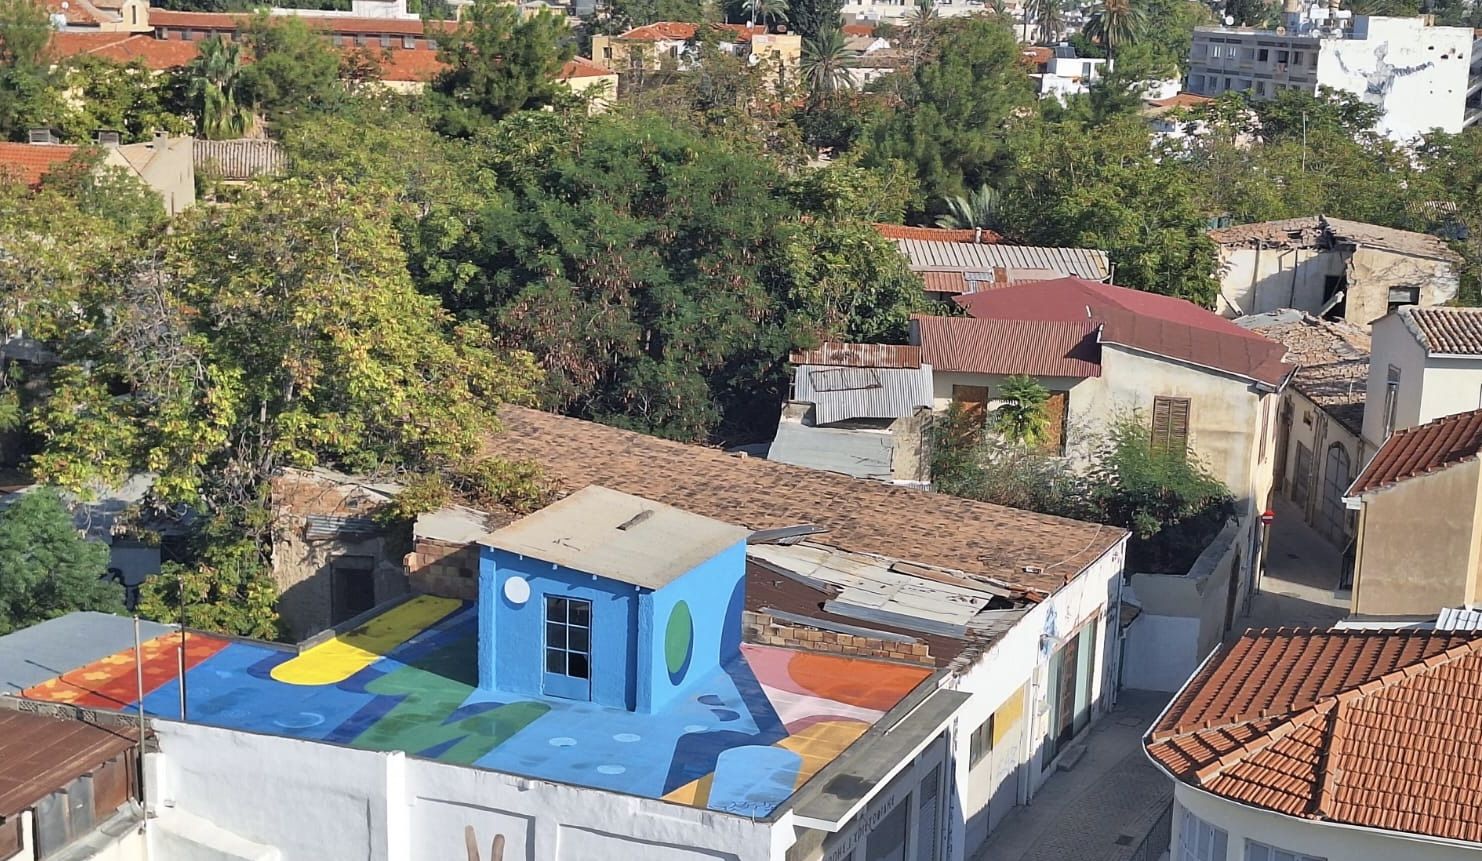  Roofscape Landmark Project Larsen Bervoets in Nicosia (ZUID).